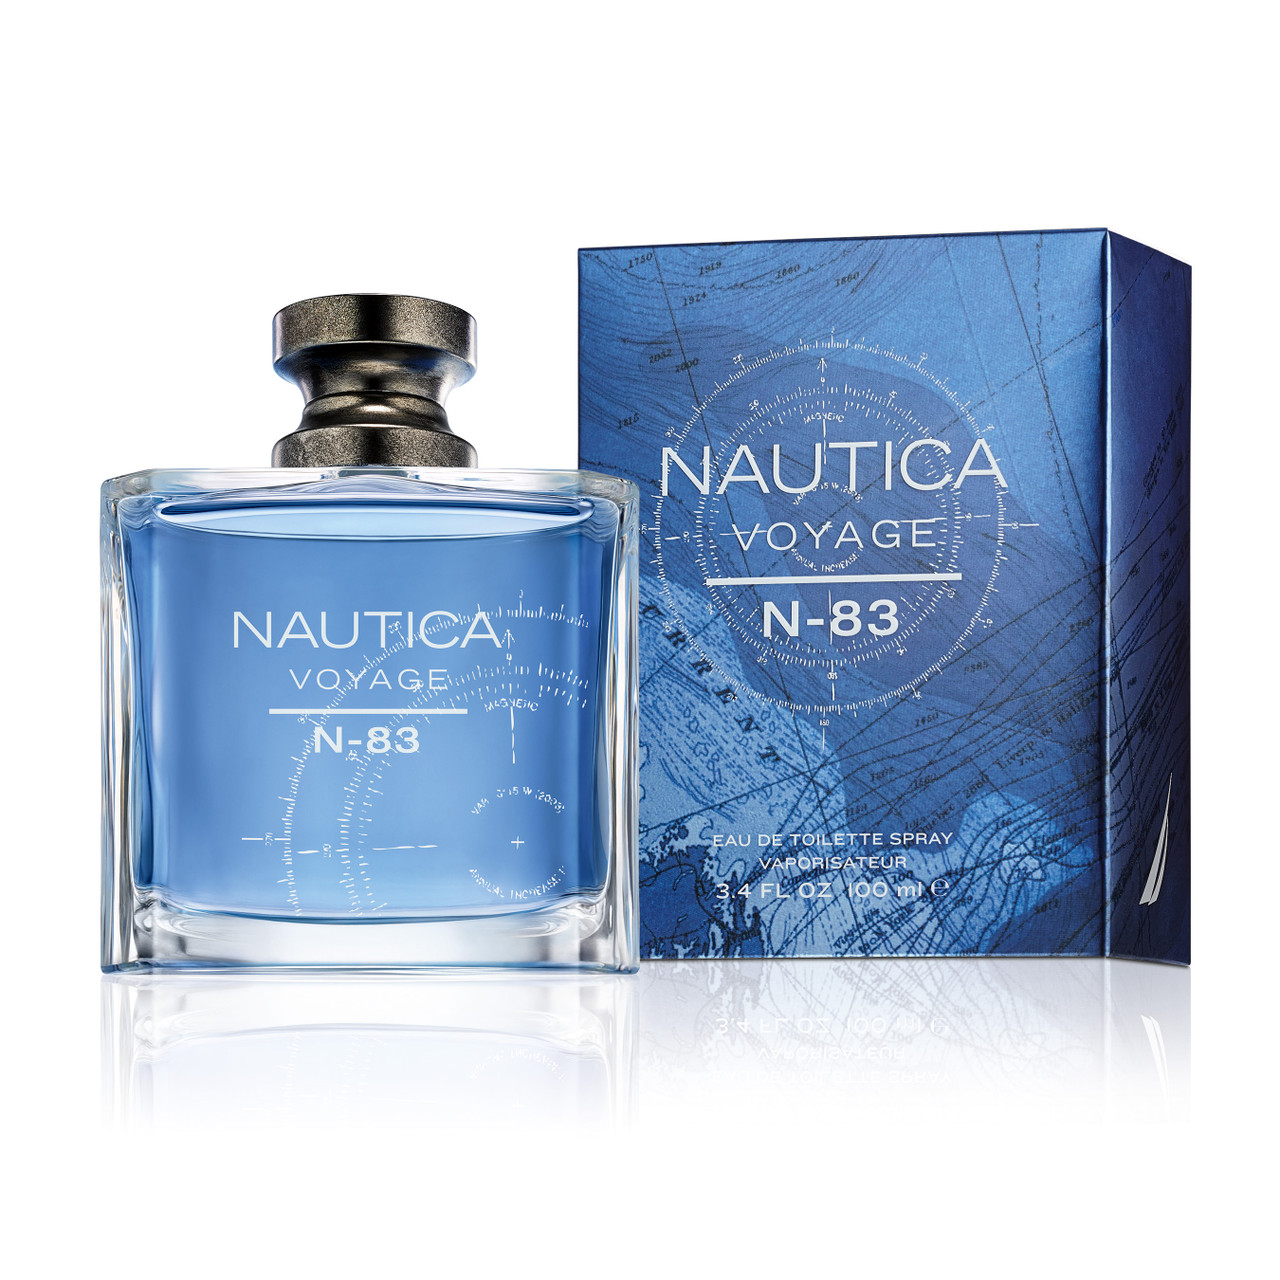 Nautica Voyage For Men Eau de Toilette Spray - 1.7 fl oz bottle